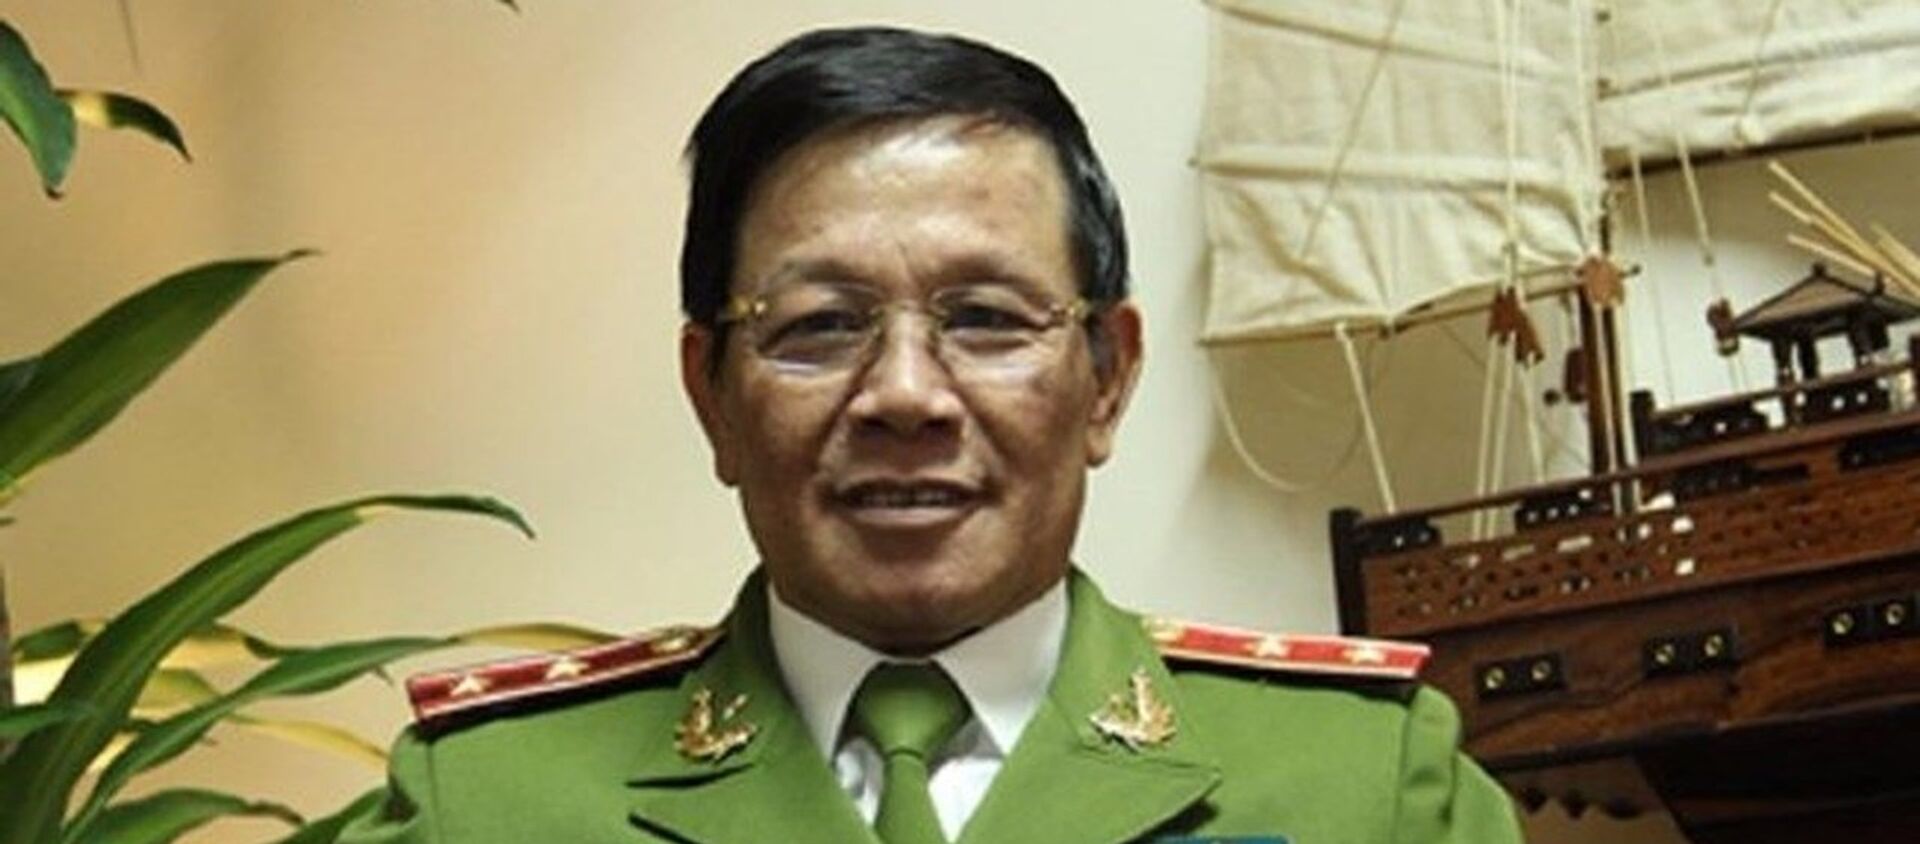 Trung tướng Phan Văn Vĩnh, tổng cục trưởng Tổng cục Cảnh sát, Bộ Công an - Sputnik Việt Nam, 1920, 08.11.2018